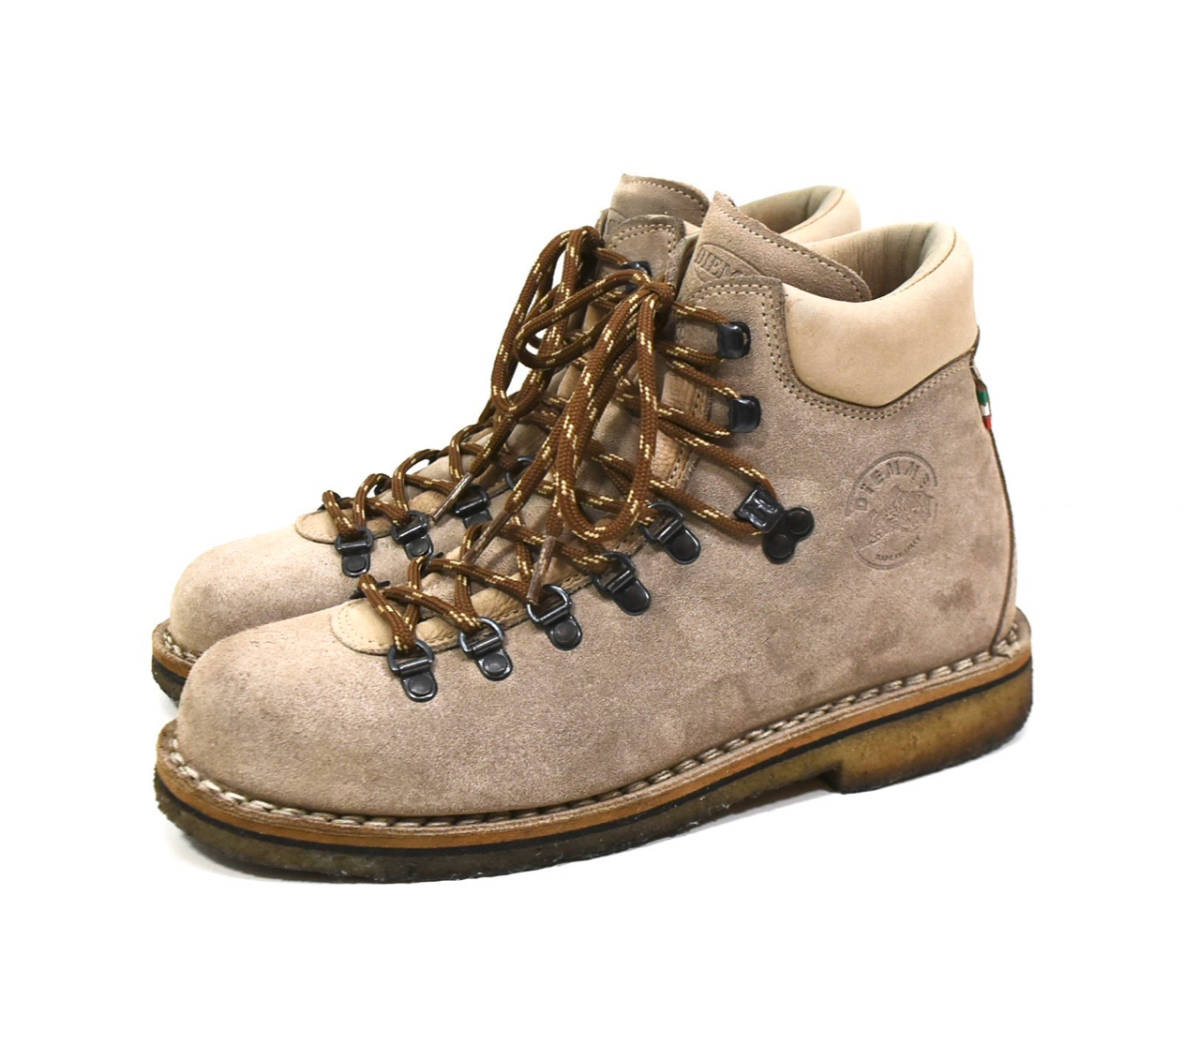 イタリア製 2000s DIEMME Mountain Boots EU41(25.5cm) Beige オールド ディエッメ マウンテンブーツ レザー ベージュ